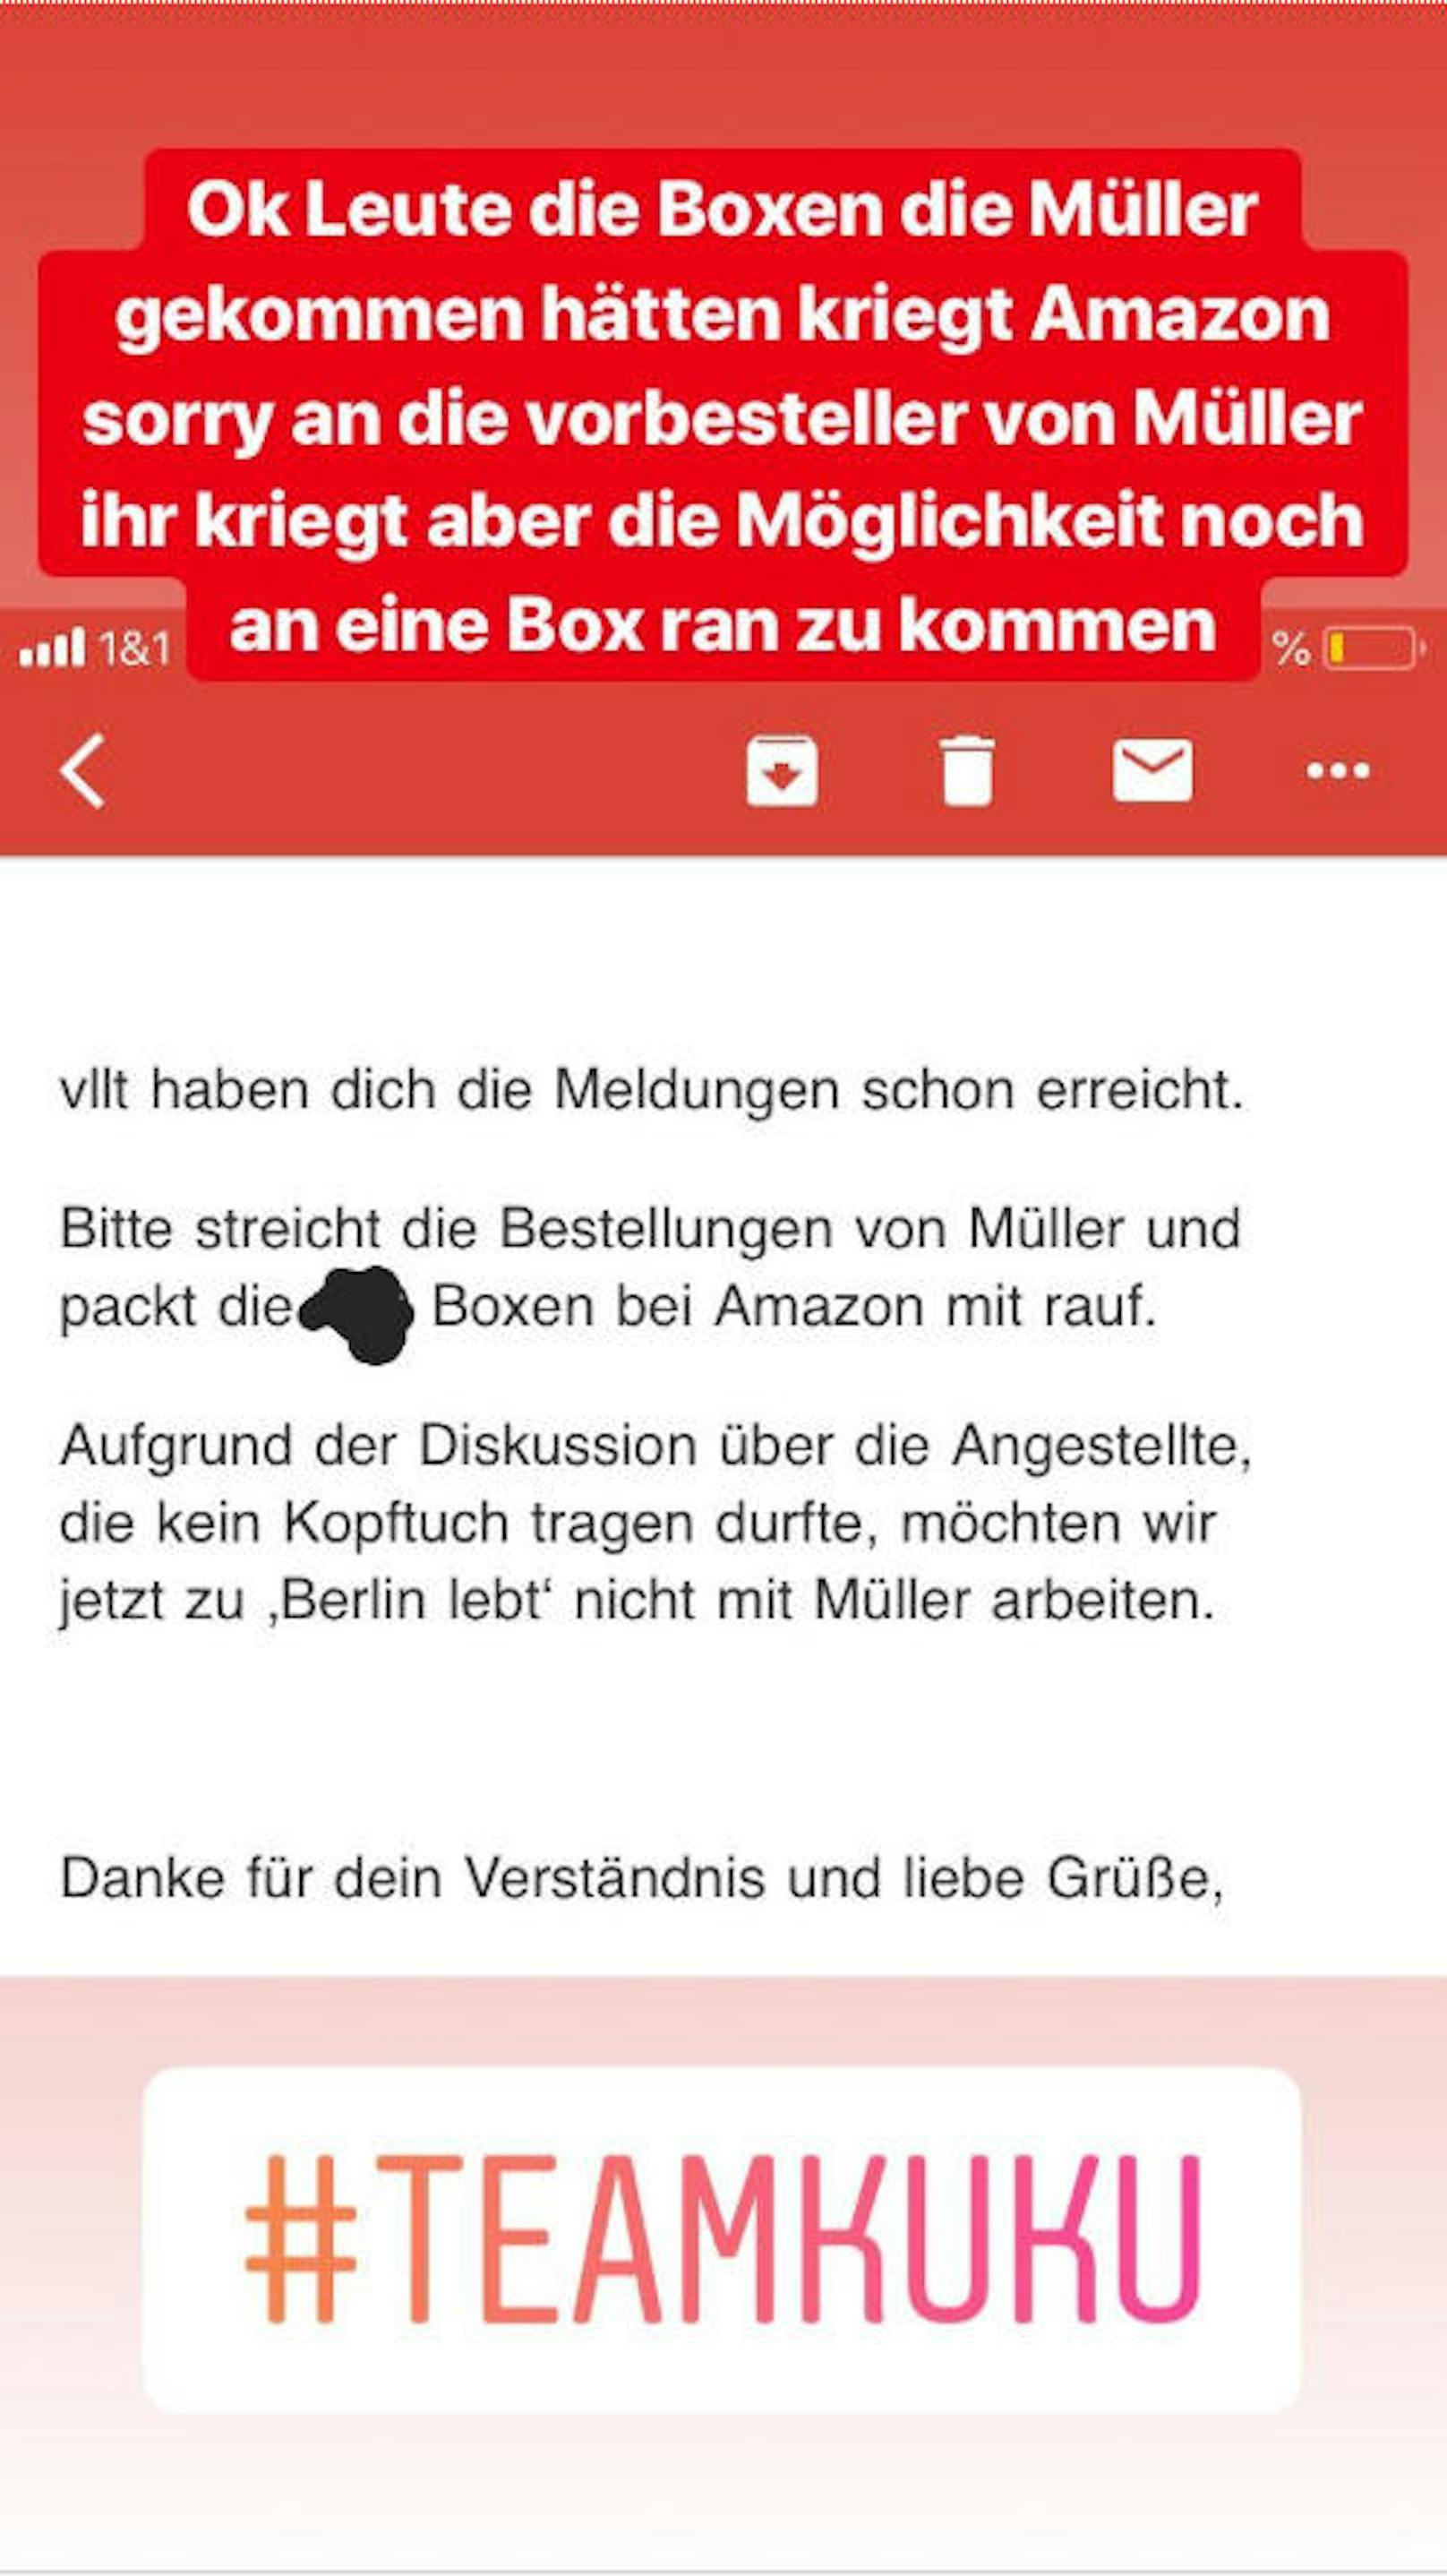 Auf Instagram erinnert Capital Bra seine Fans immer wieder an den Boykott von Müller.